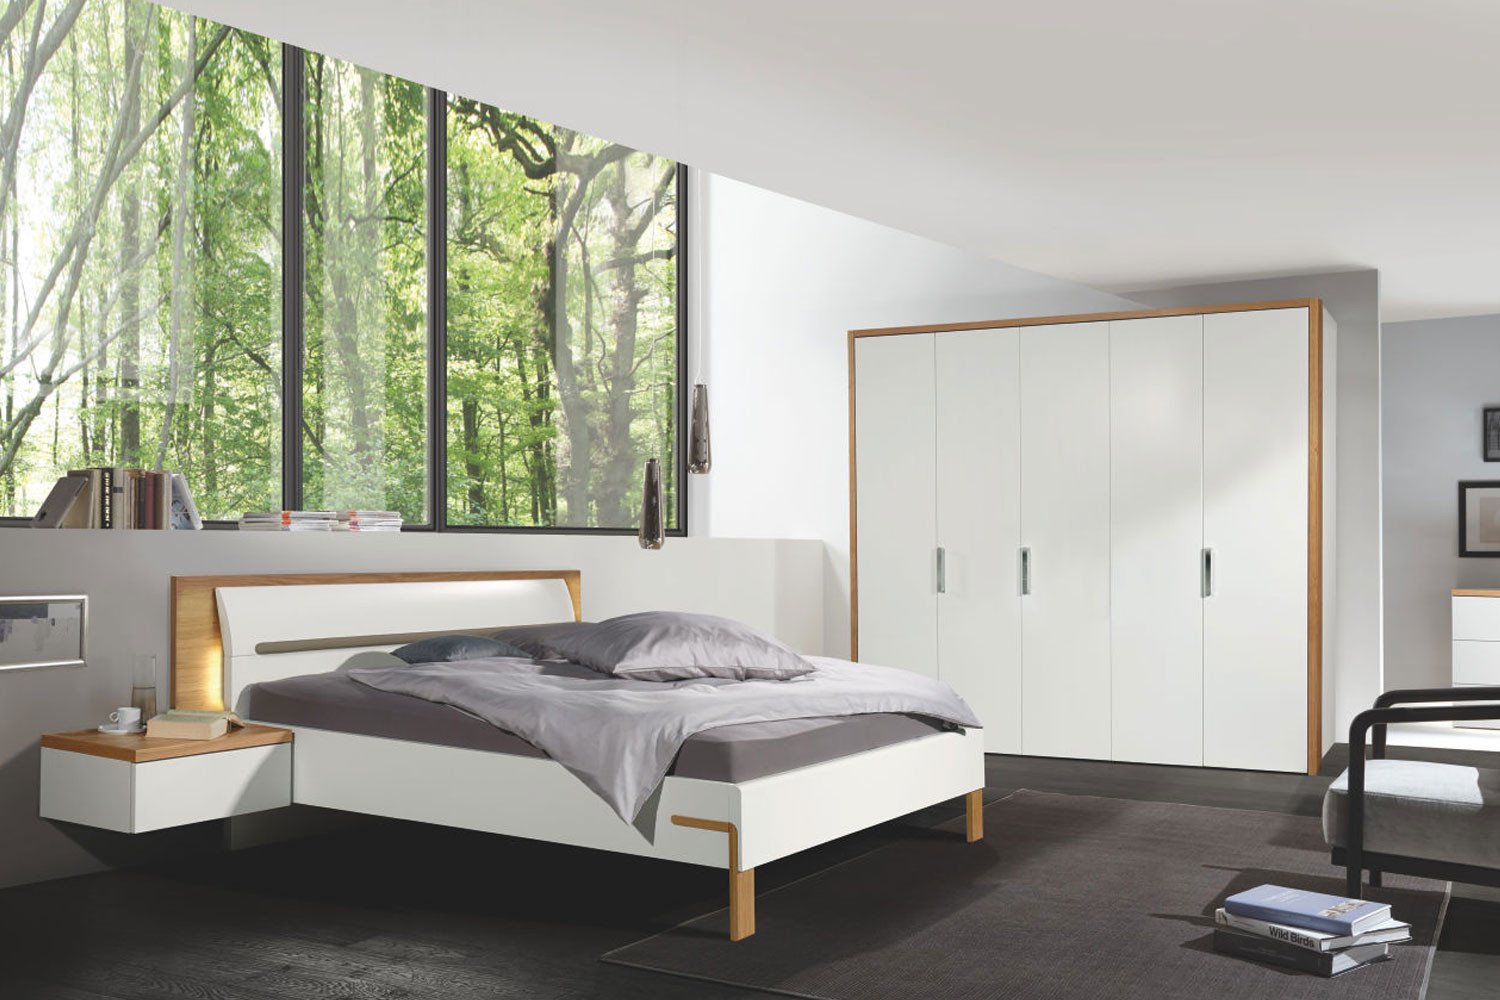 hülsta Dream Schlafzimmer mit Doppelbett   Möbel Letz   Ihr Online ...